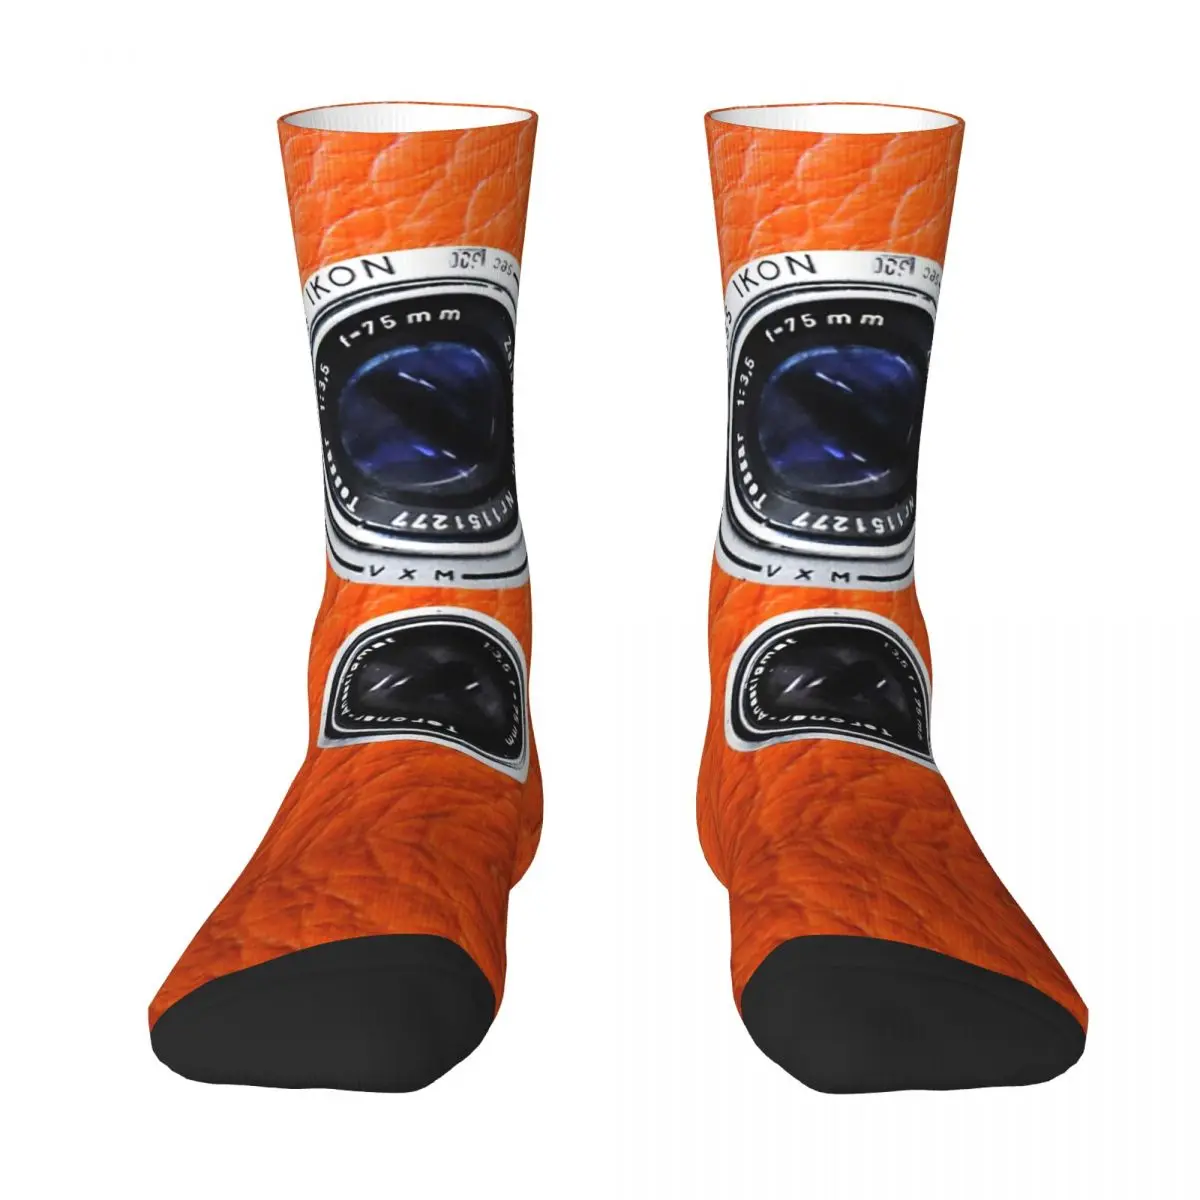 Camera With Orange Pumpkin Leather For Photographer Gift Adult Socks,Unisex socks,men Socks women Socks